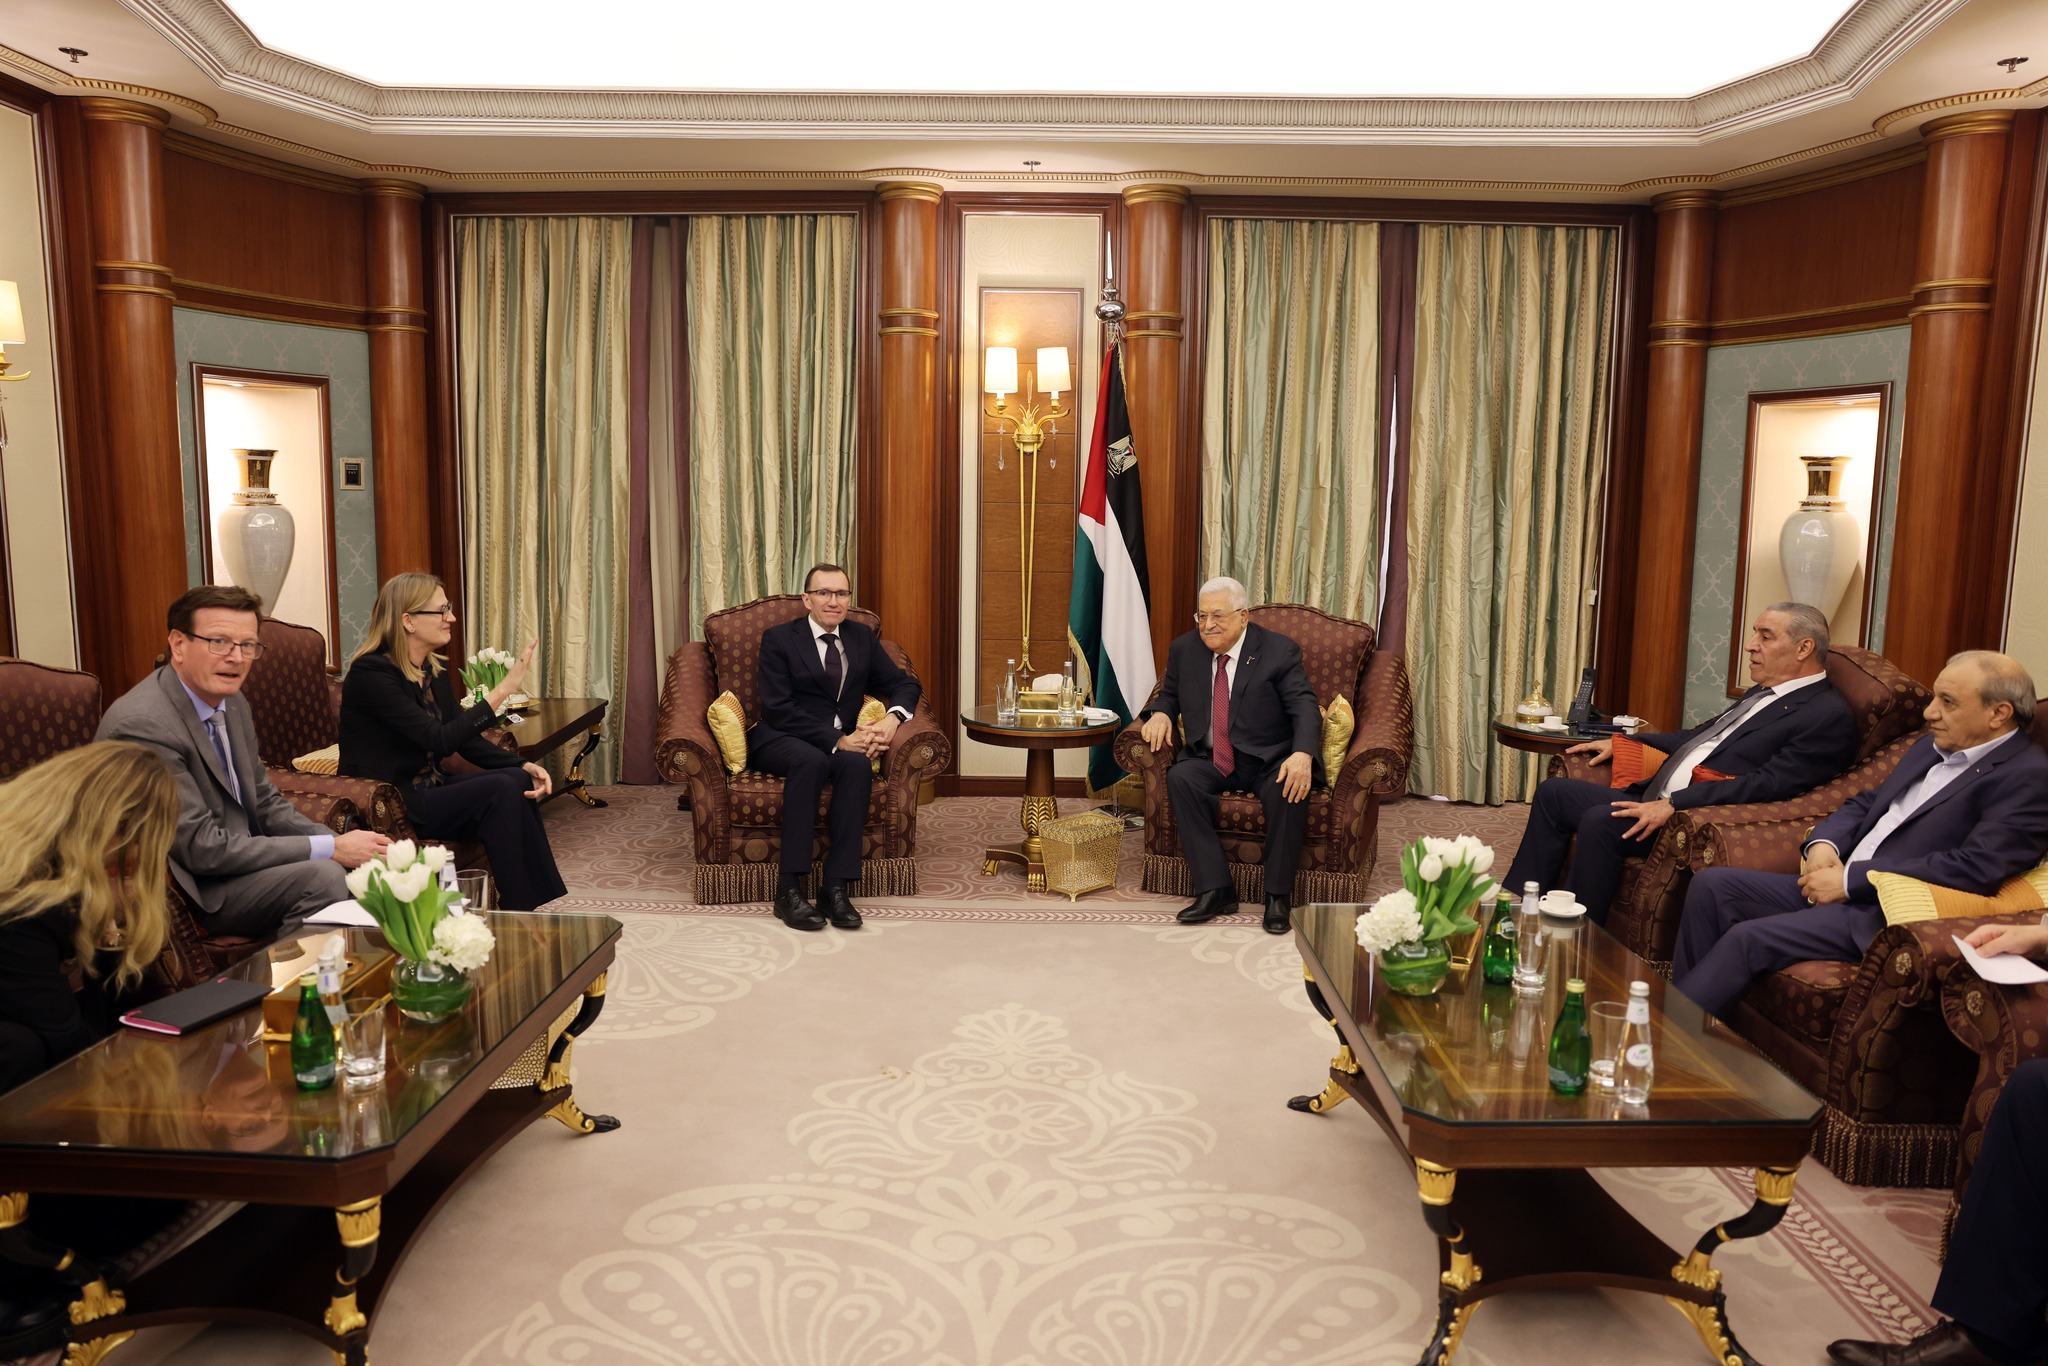 الرئيس عباس يستقبل وزير الخارجية النرويجي في الرياض